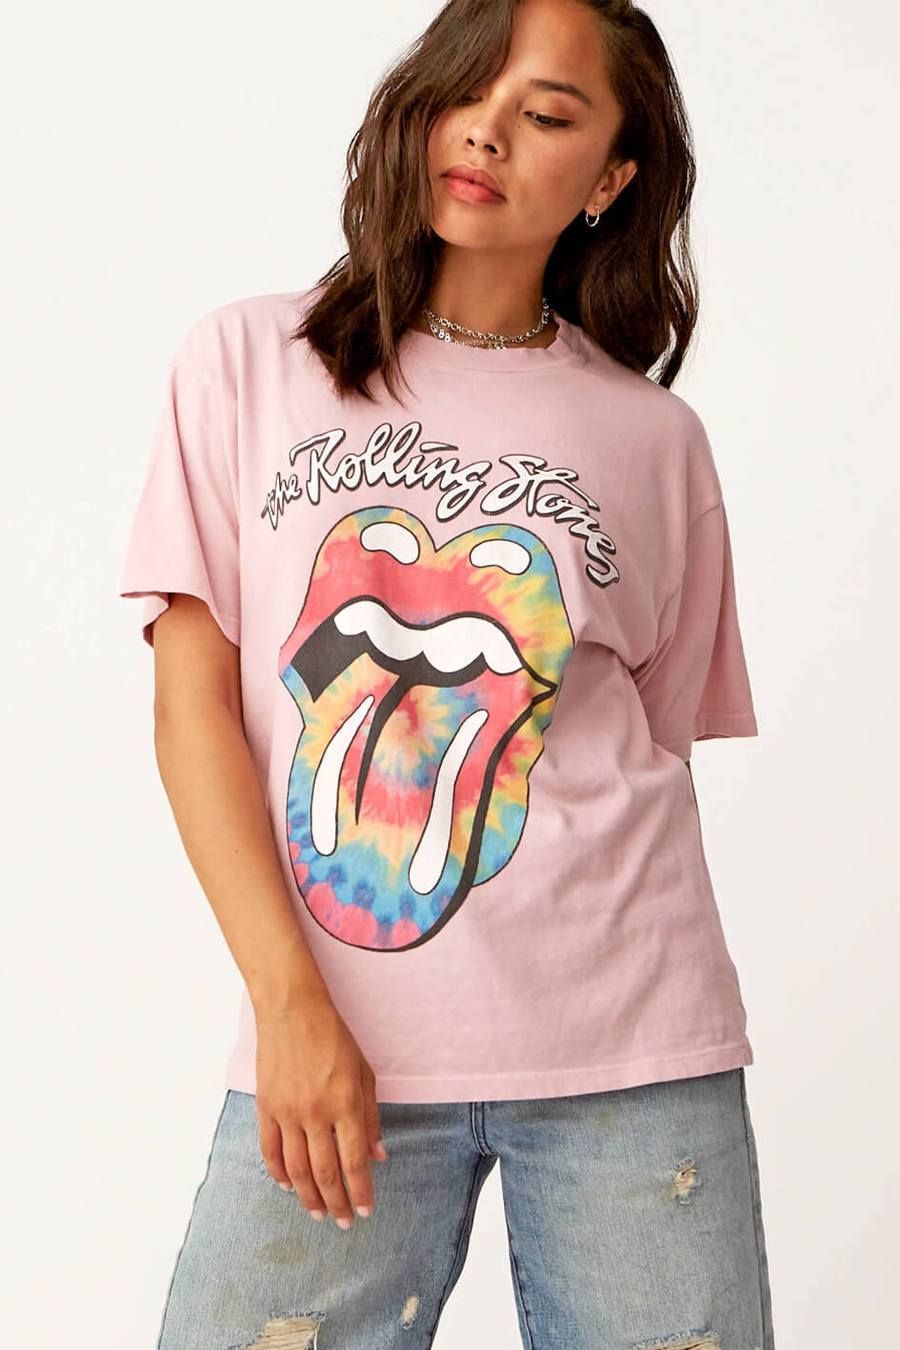 Rolling Stones Tie Dye